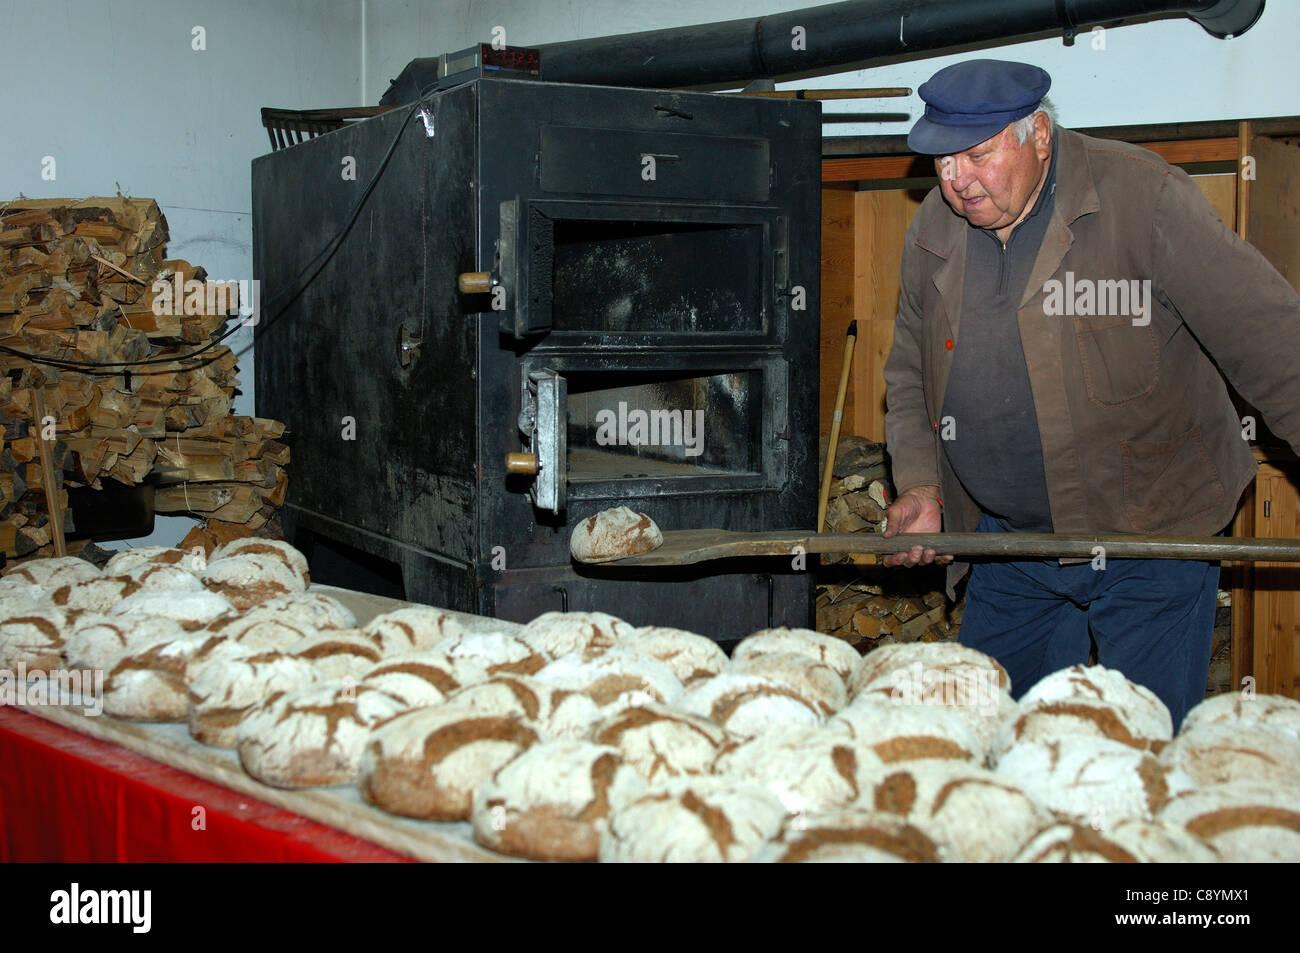 Baker, die Aufnahme von frisch gebackenen Walliser Roggen Brot aus dem Backofen der Dorfbäckerei in Erschmatt, Wallis, Schweiz Stockfoto